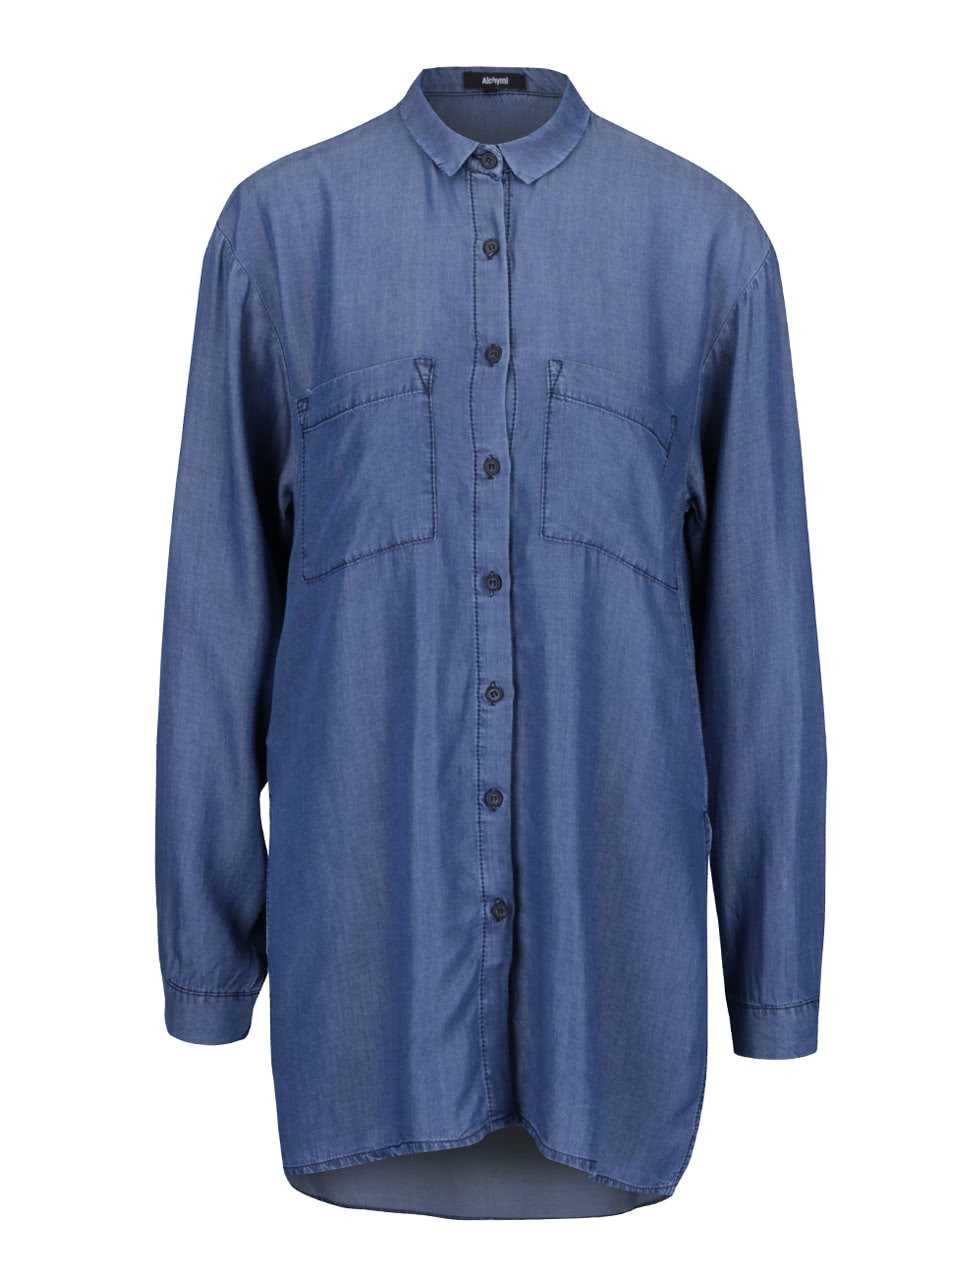 Modrá denimová dlouhá košile s kapsami Alchymi Dhani